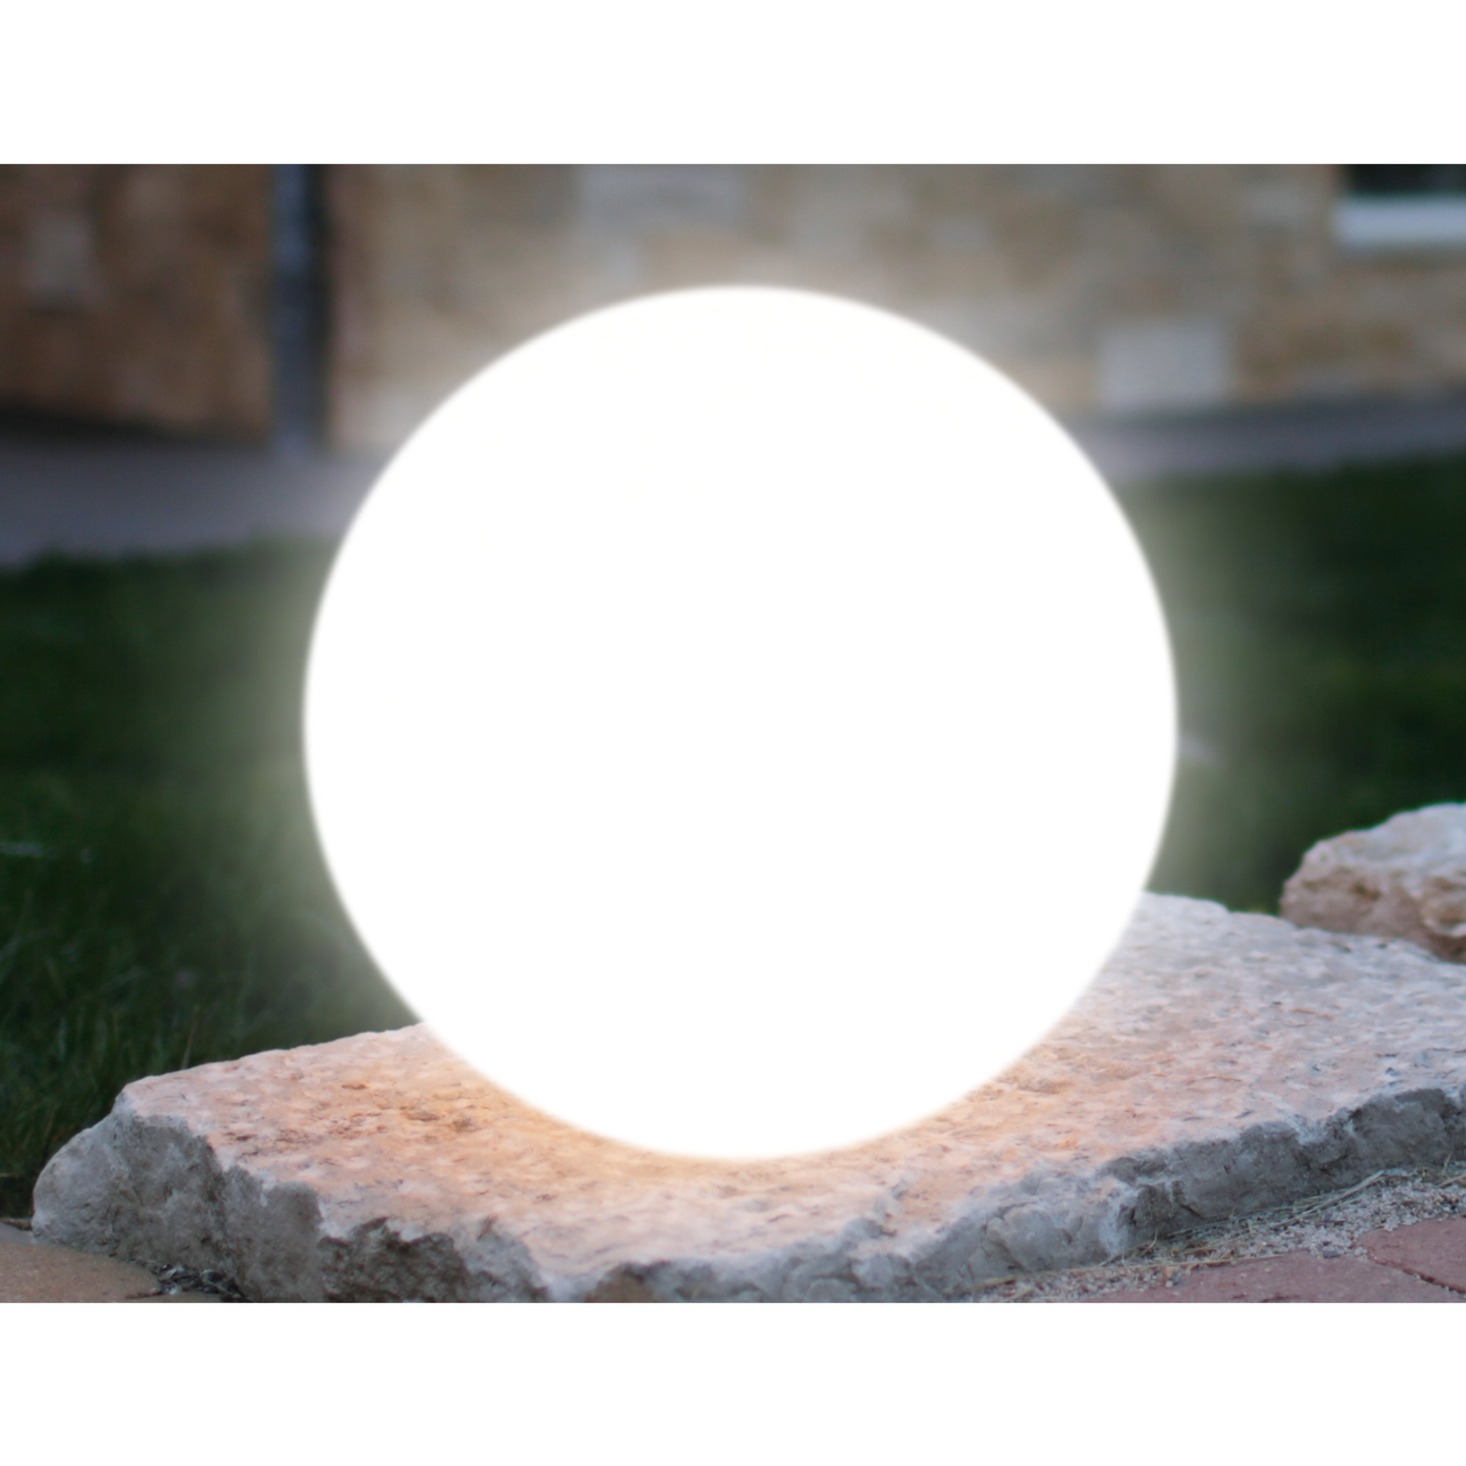 Image of Alternate - Leuchtkugel Mundan weiß 400mm, Leuchte online einkaufen bei Alternate